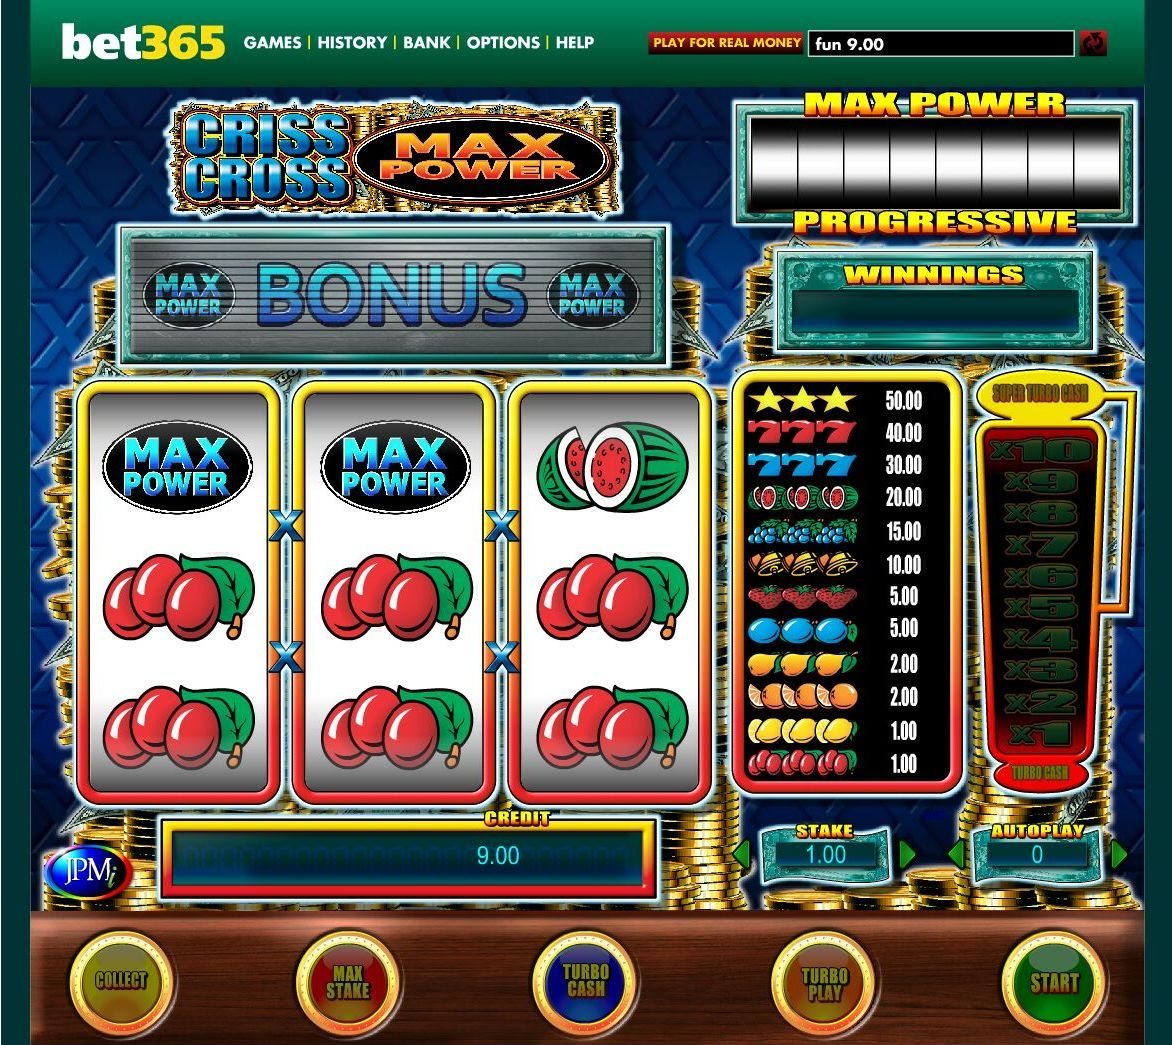 Игровые автоматы с покупными бонусами играть бесплатно как начать ограбление казино в гта 5 онлайн с друзьями